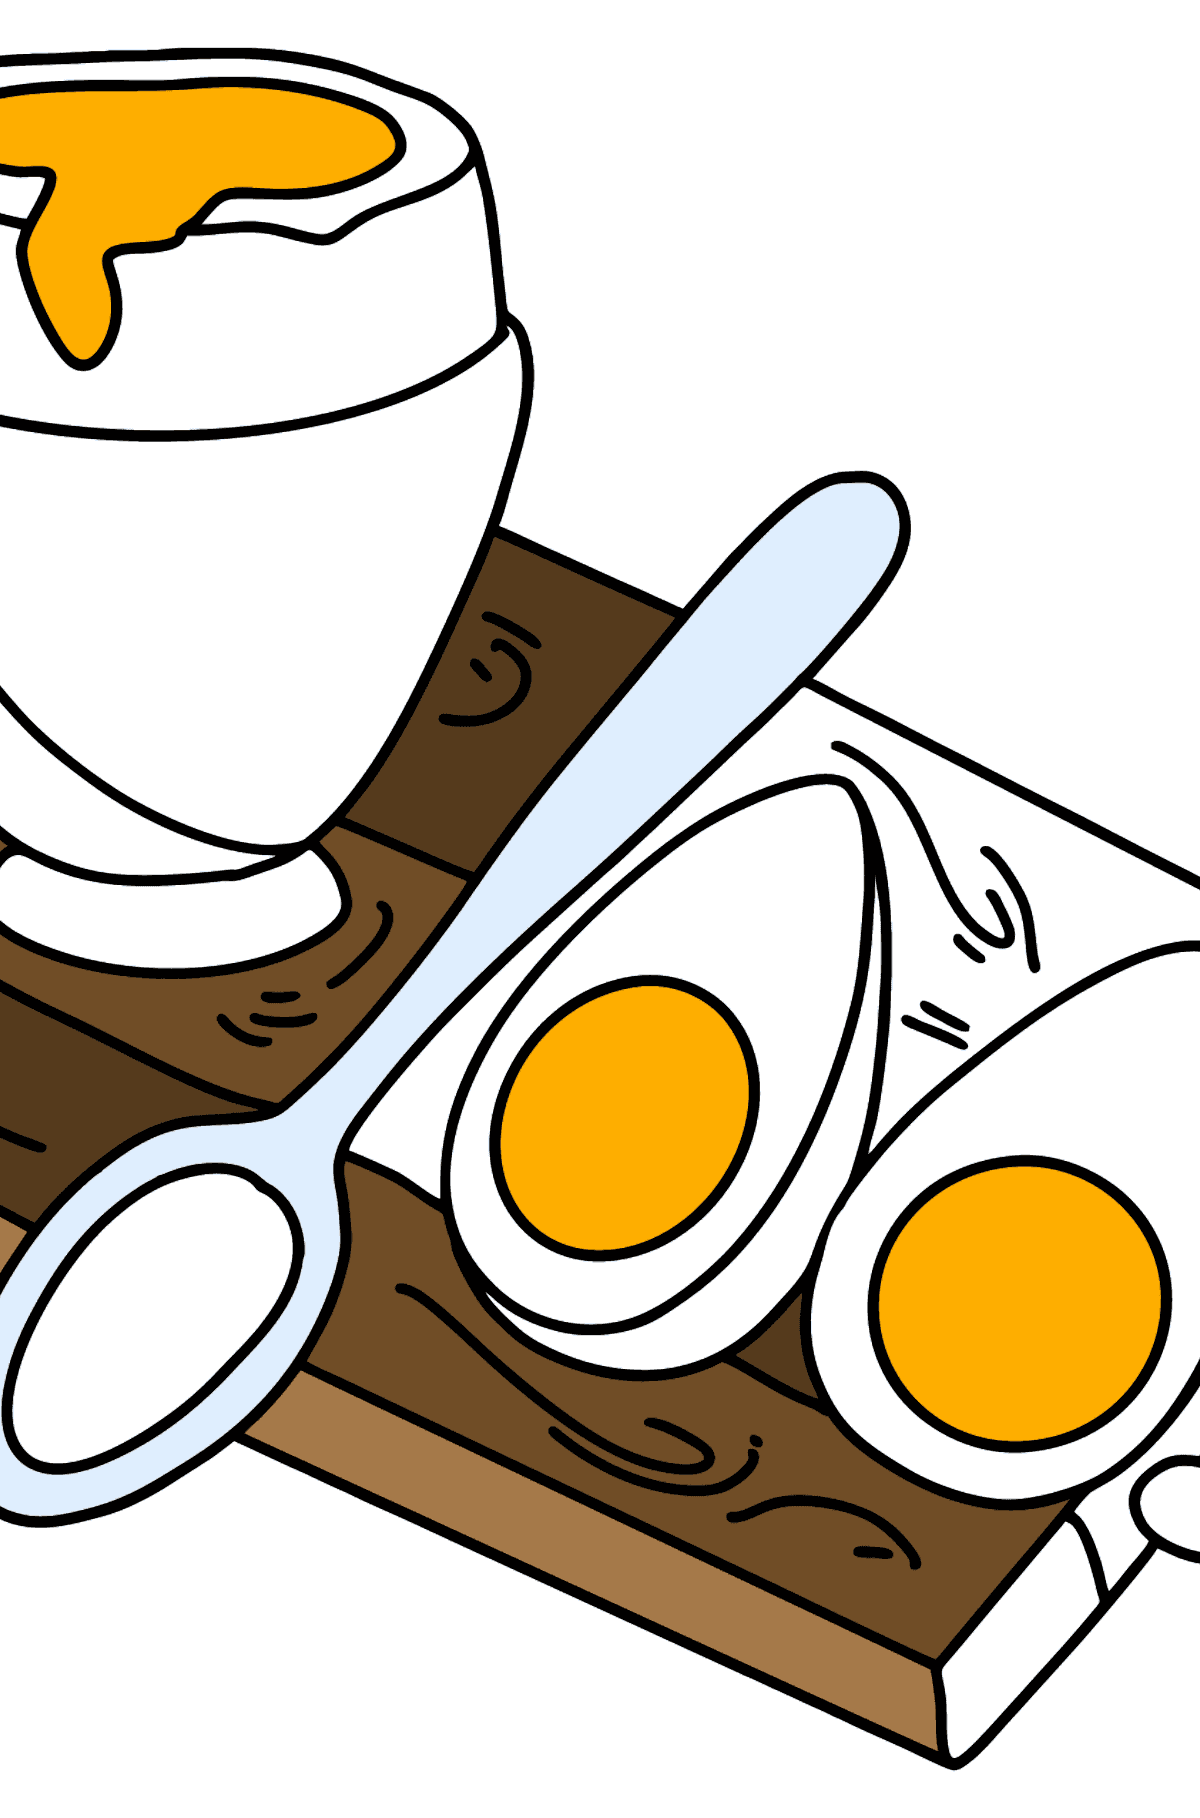 Tegning til fargelegging hardkokt og posjert egg - Tegninger til fargelegging for barn